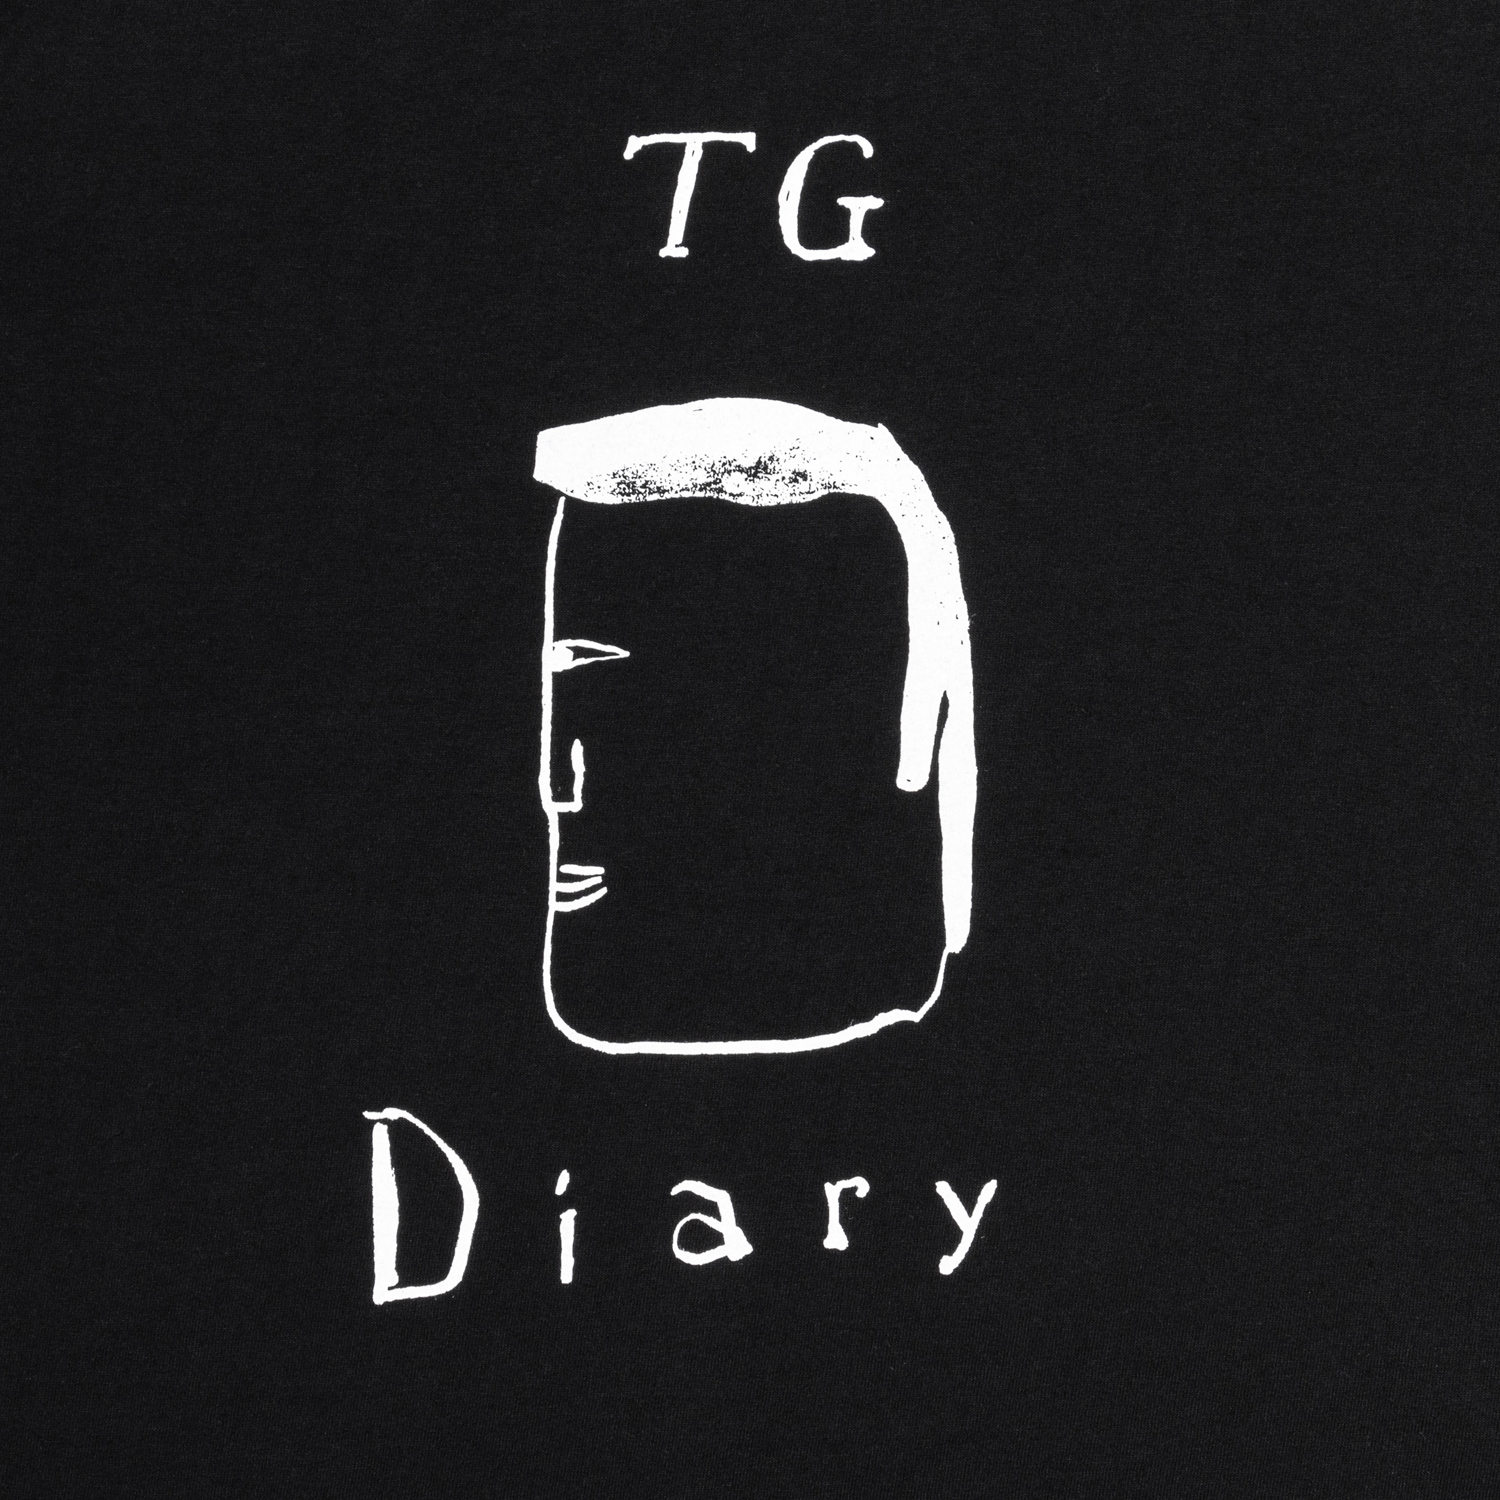 Diary designed by Tomoo Gokita